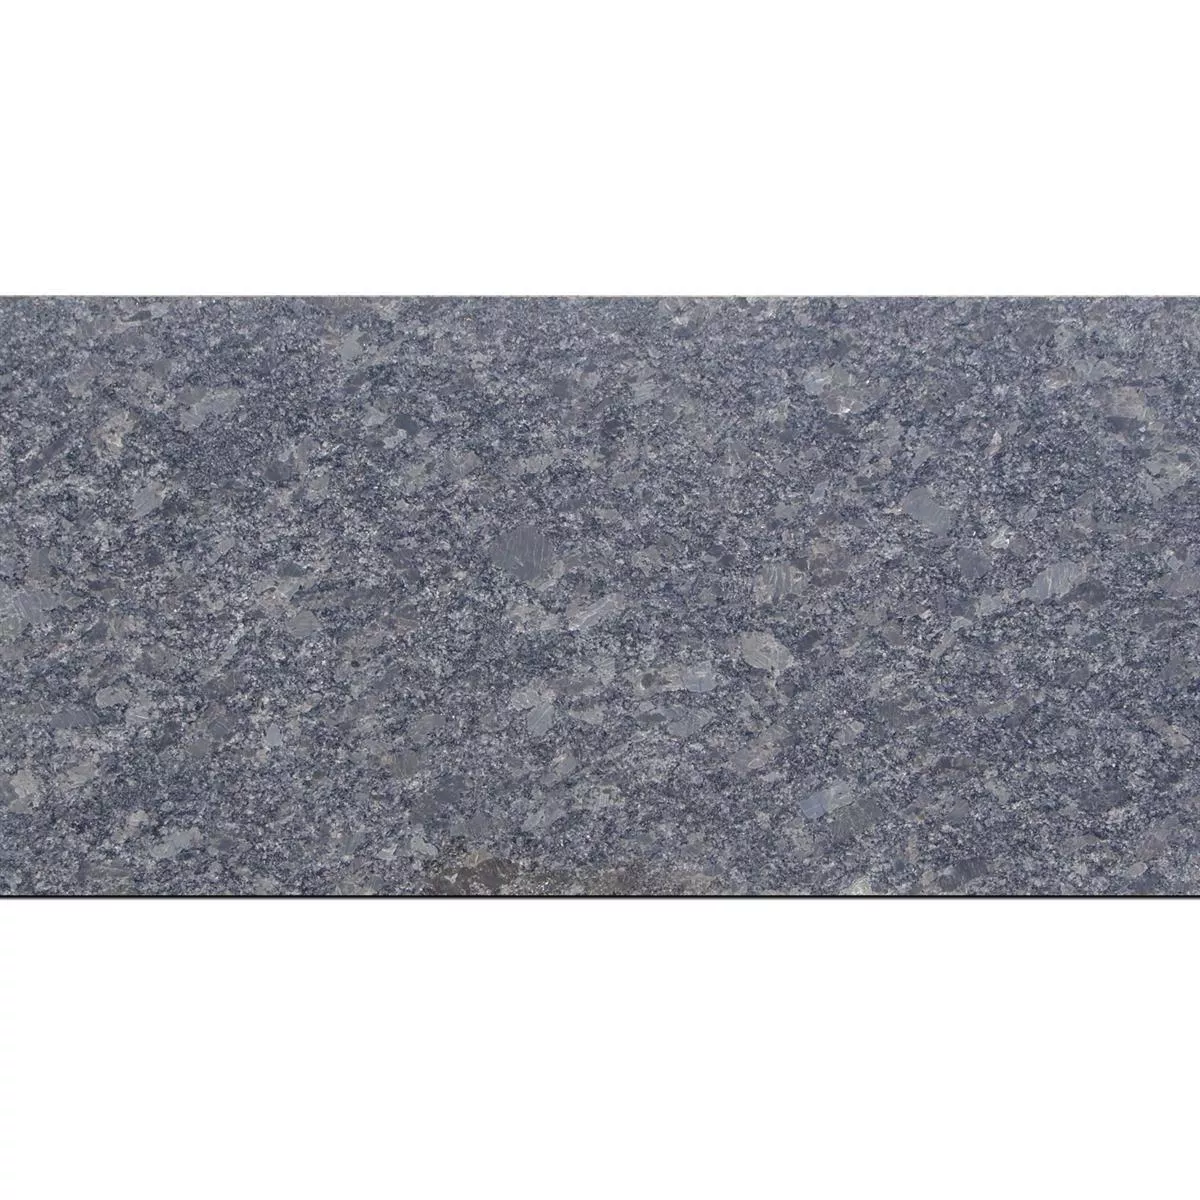 Natural Stone Tiles Granite Old Grey Lappato 30,5x61cm